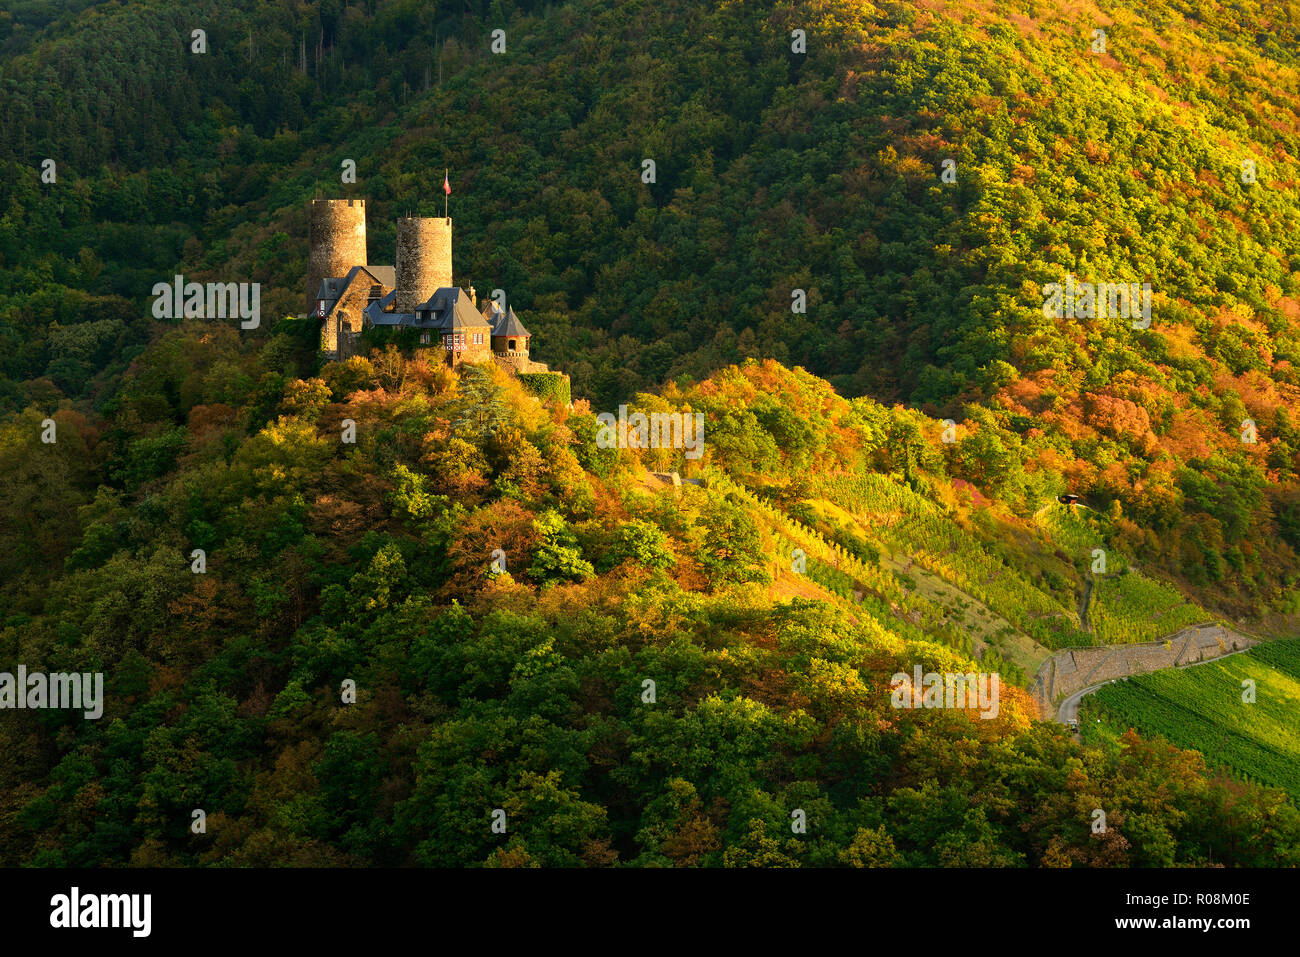 Château de Thurant entourée de bois et de vignes en automne, lumière du soir, Alken, Mosel, Rhénanie-Palatinat, Allemagne Banque D'Images